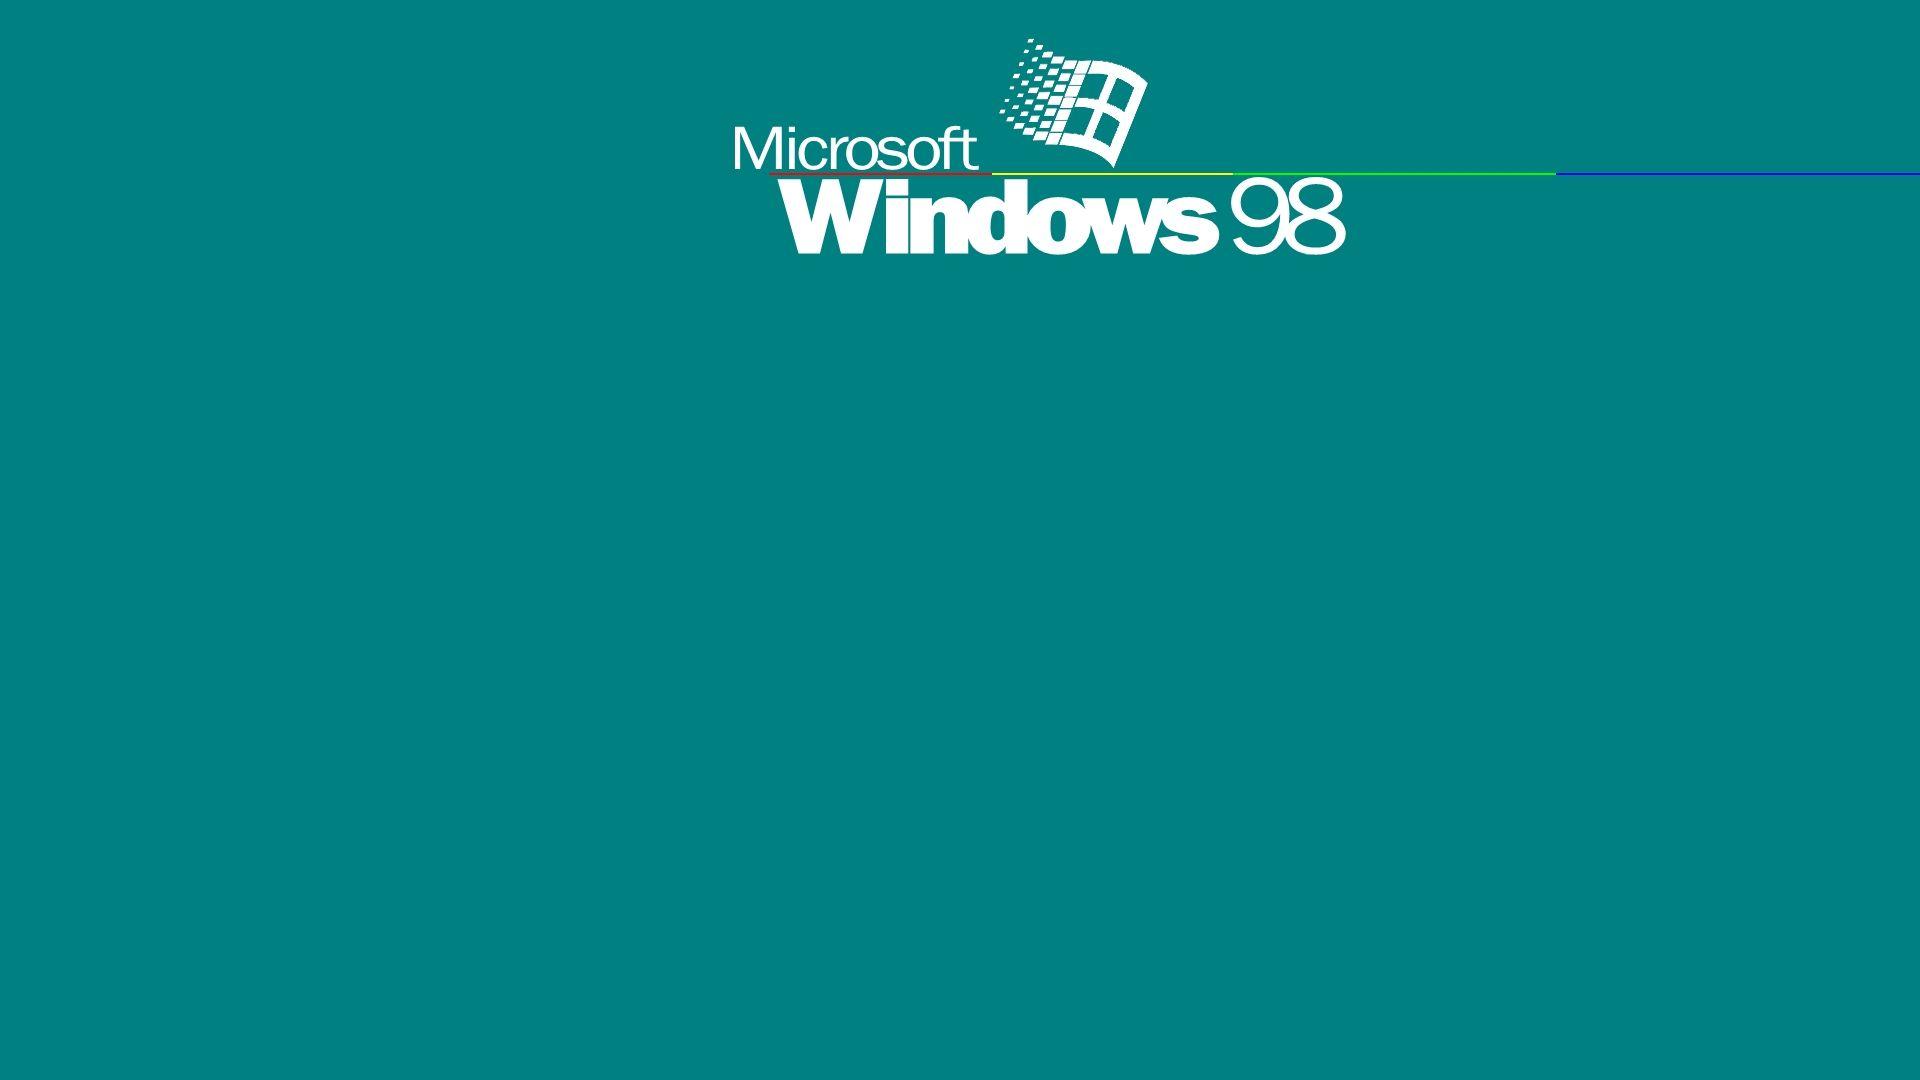 Nếu bạn nghiện game và yêu thích phong cách cổ điển, hãy trang trí desktop của mình với hình nền Windows 98 đặc sắc này! Chắc chắn bạn sẽ thấy mình như đang trở lại tuổi thơ với màn hình cũ kỹ và những trò chơi đầy thú vị!